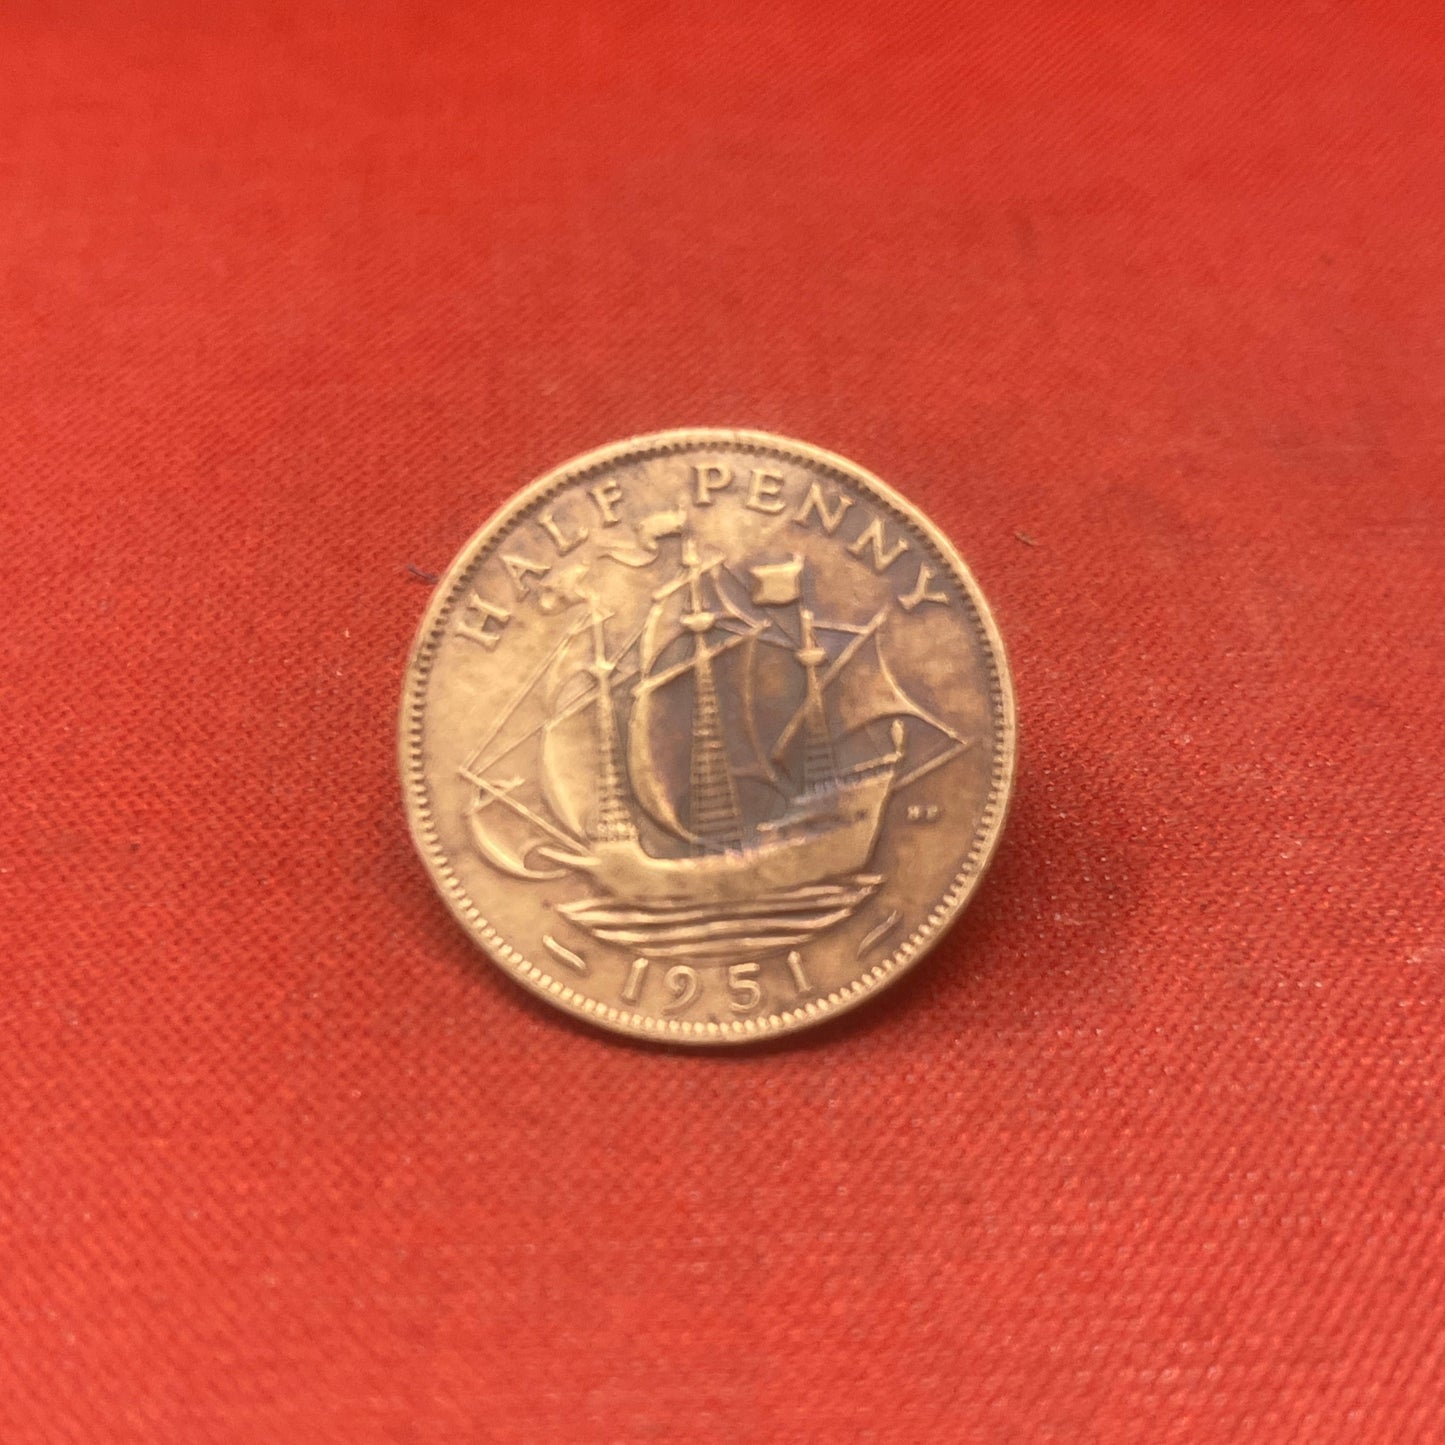 King George VI 1951 Half Penny